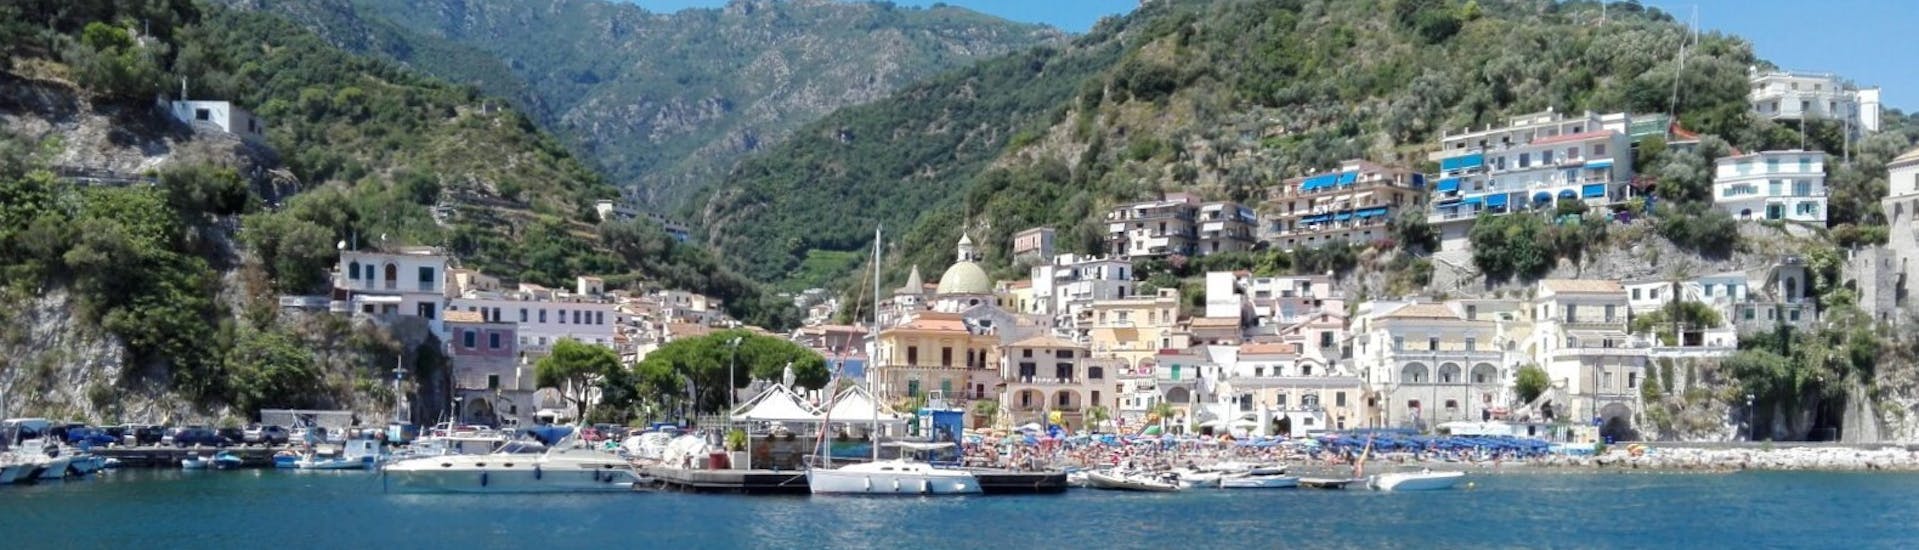 Die sorrentinische Küste vom Boot aus gesehen während der privaten Bootstour von Sorrent nach Positano mit Aperitif und Schnorcheln.